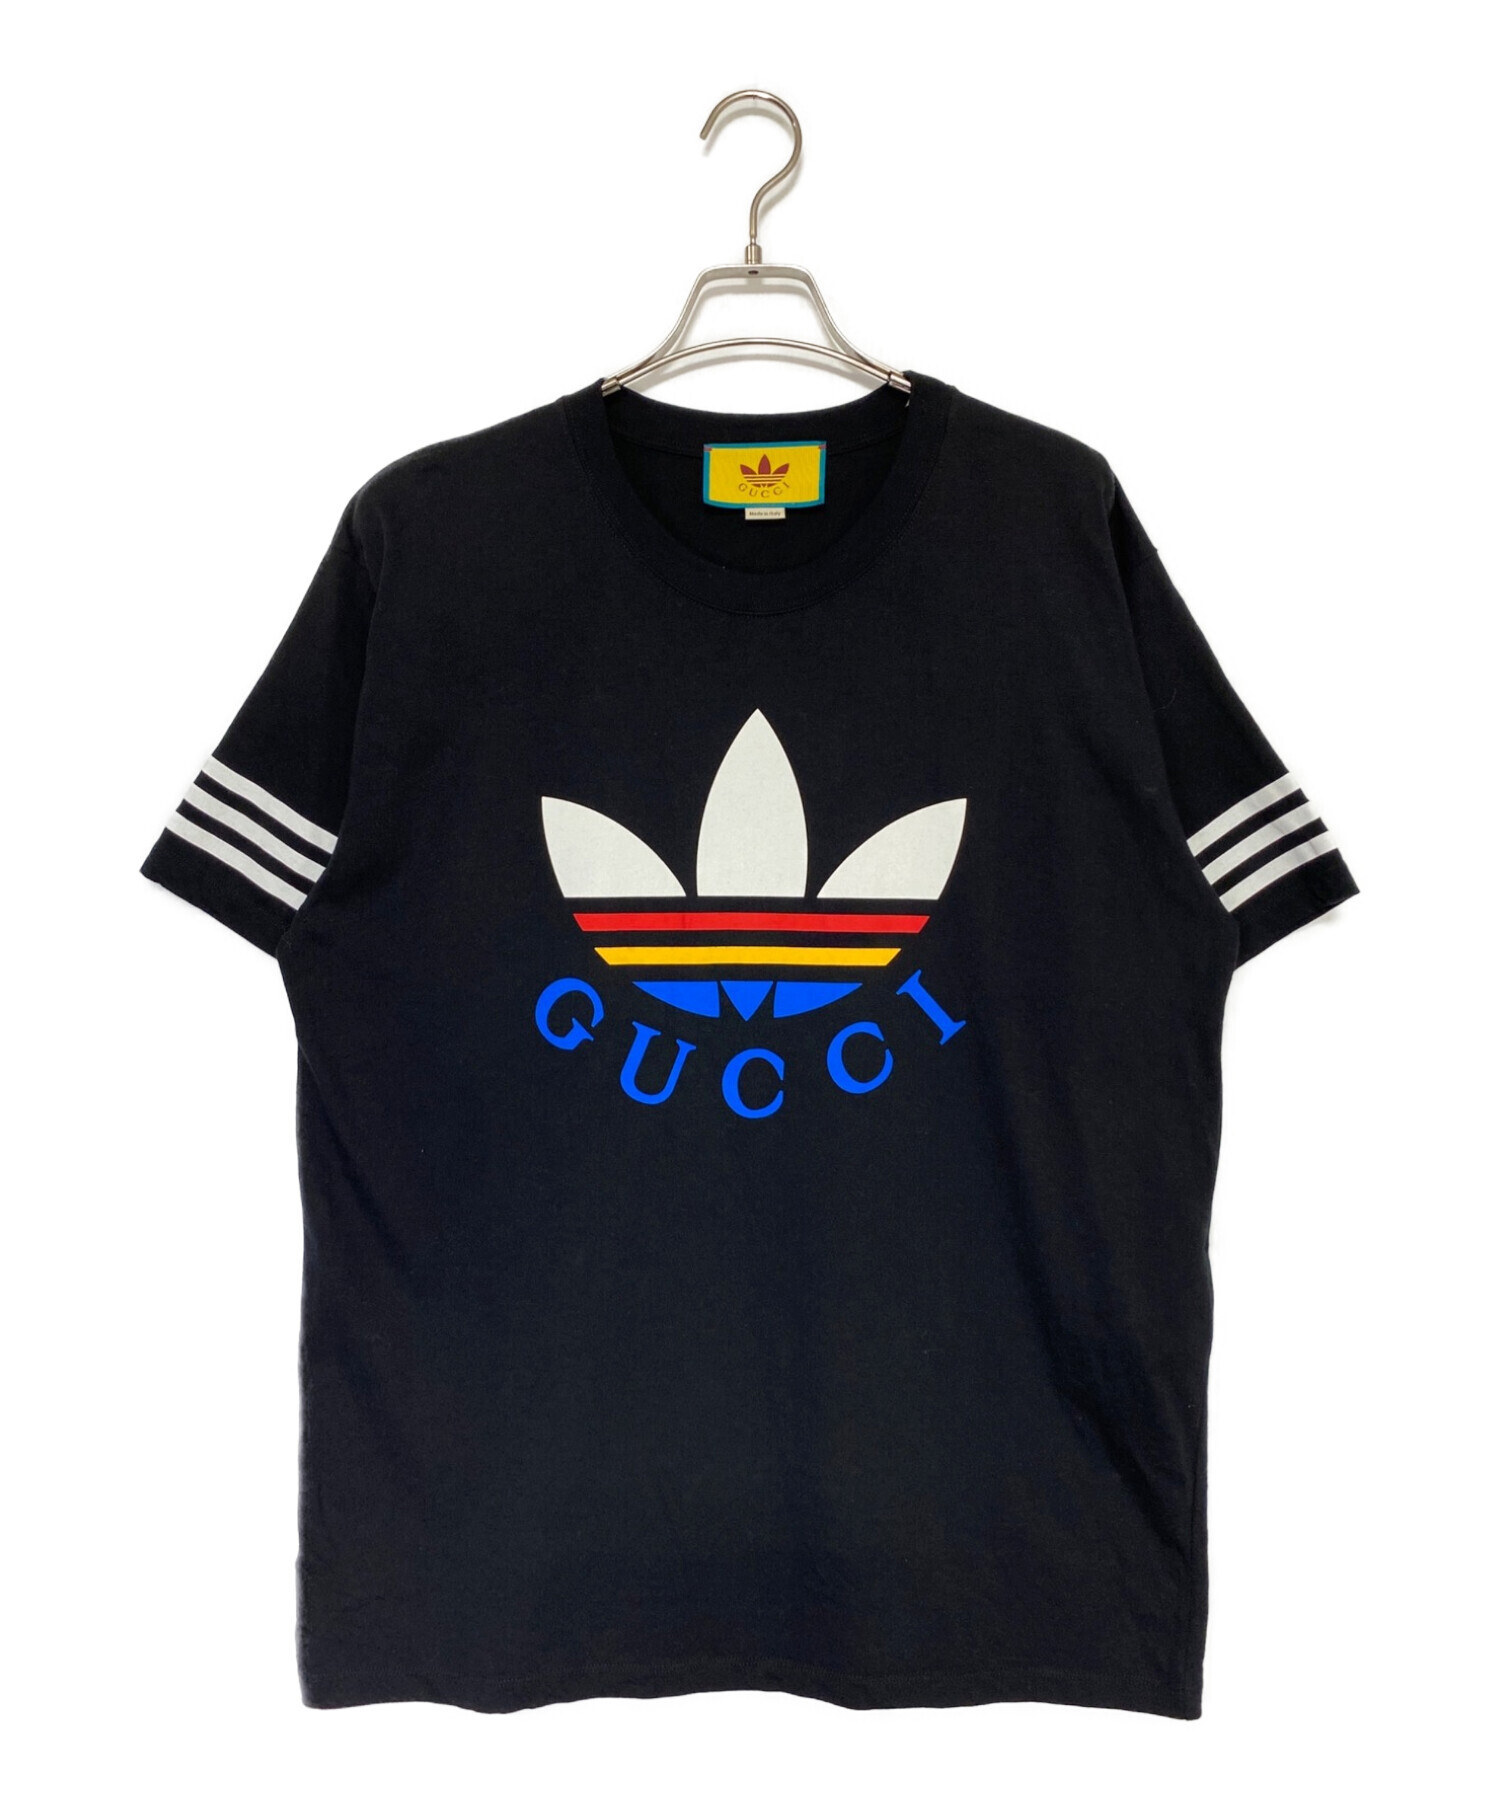 GUCCI (グッチ) adidas (アディダス) Tシャツ ブラック サイズ:S